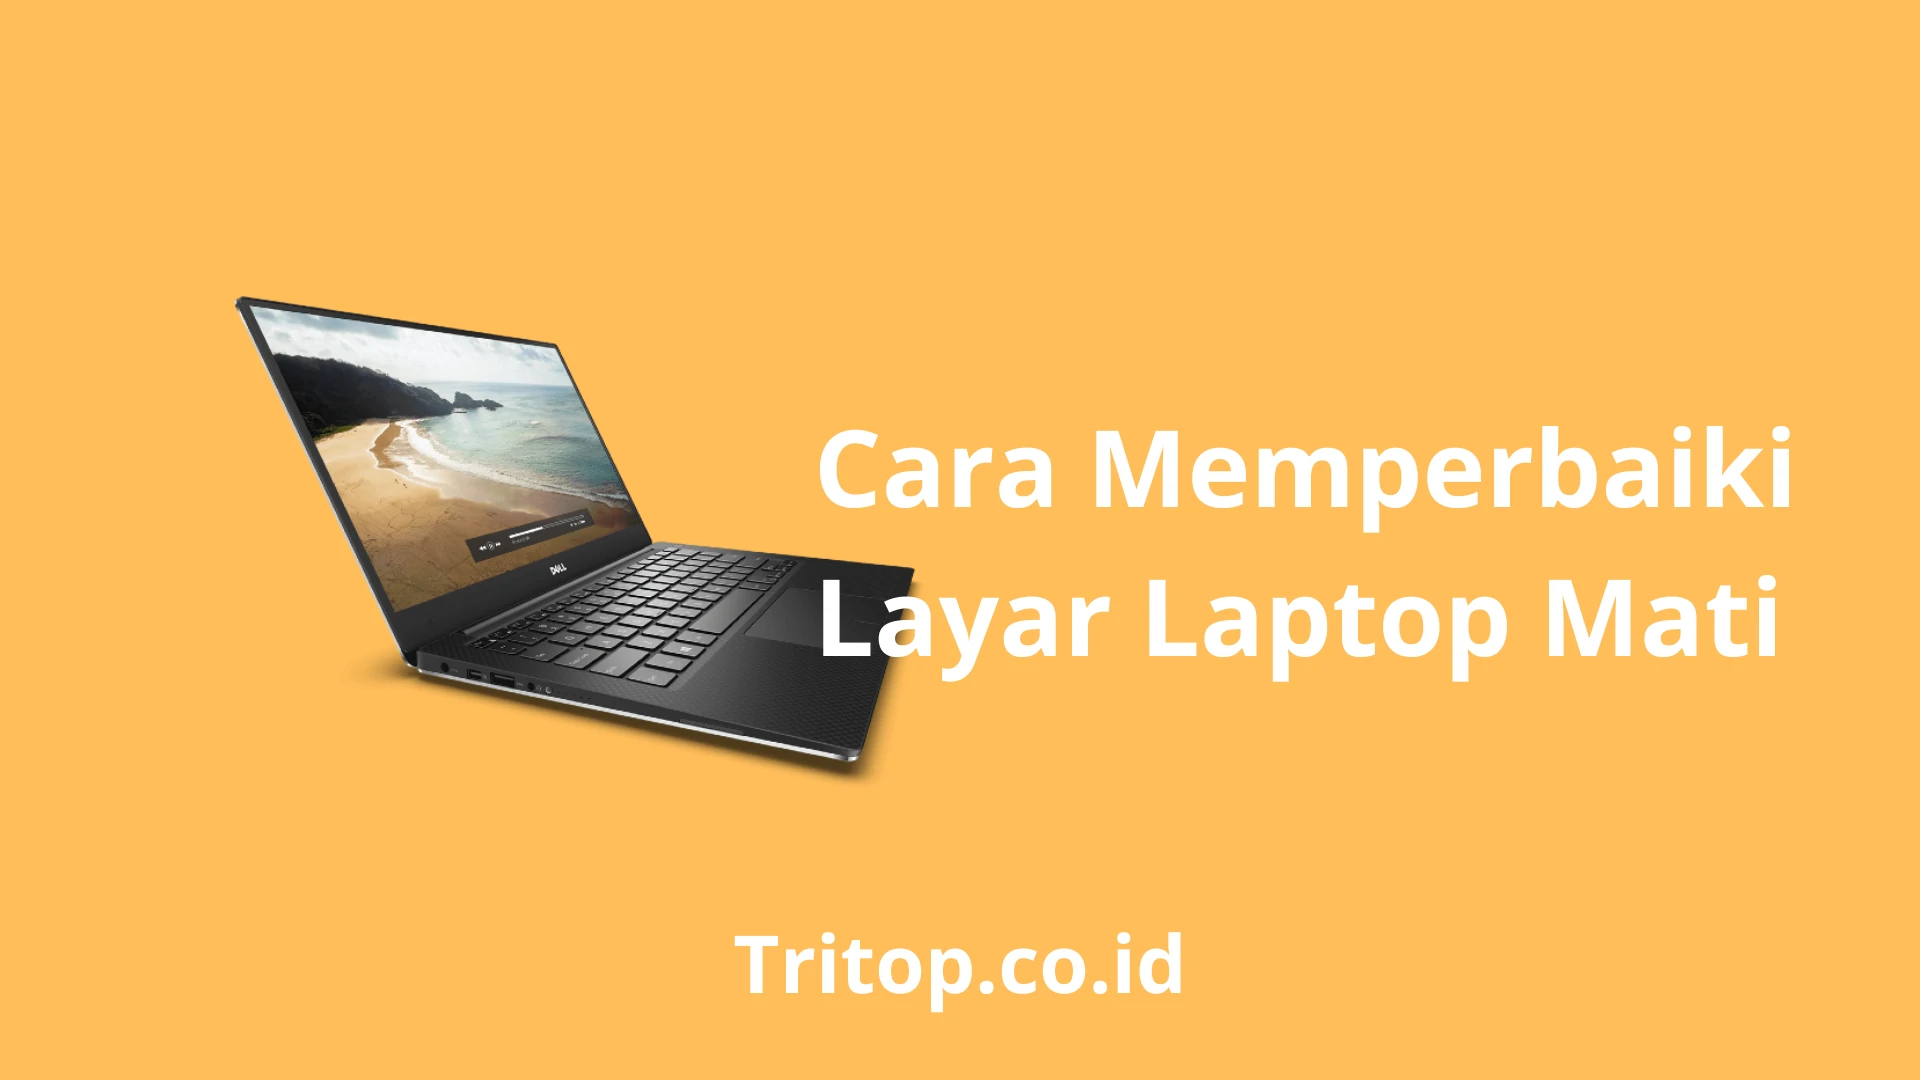 Layar Laptop Mati Tritop.co.id